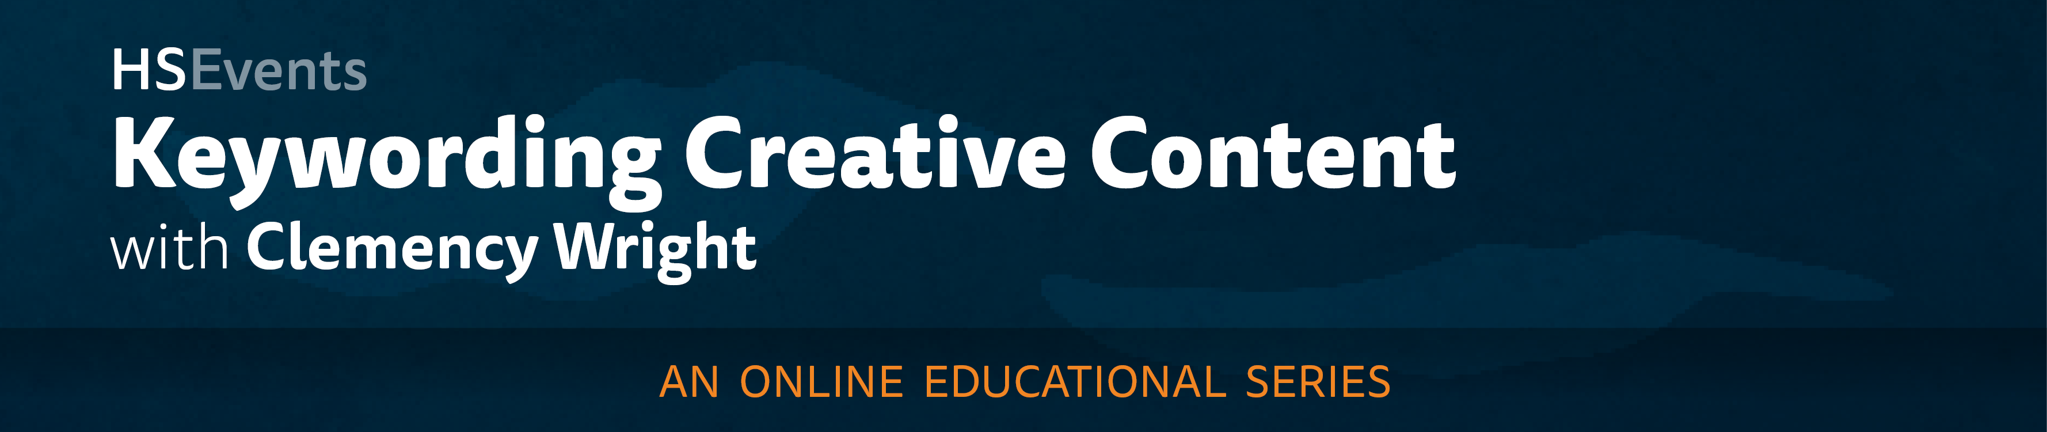 Keywording Creative Content - E21950